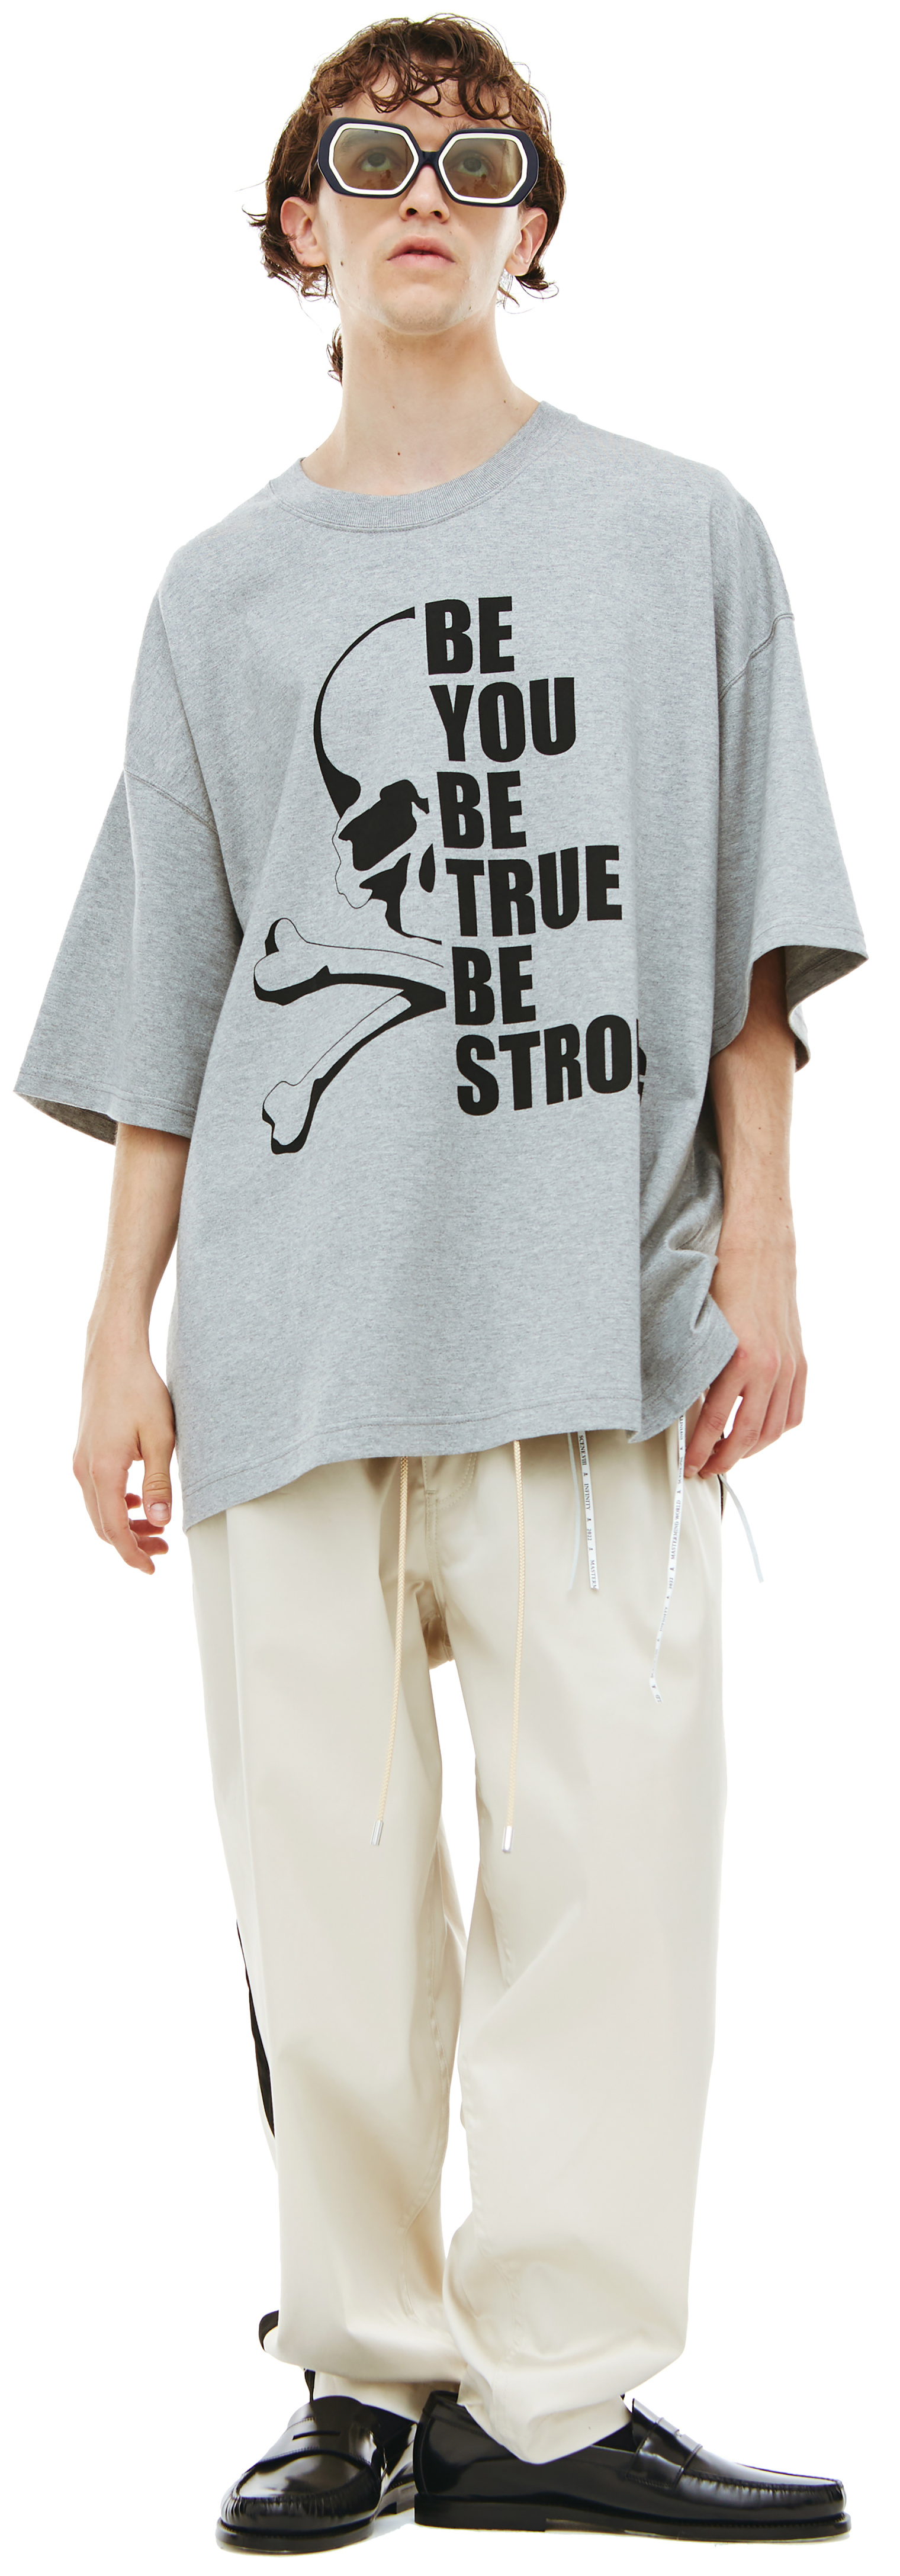 Mastermind WORLD Crey Cotton t-shirt